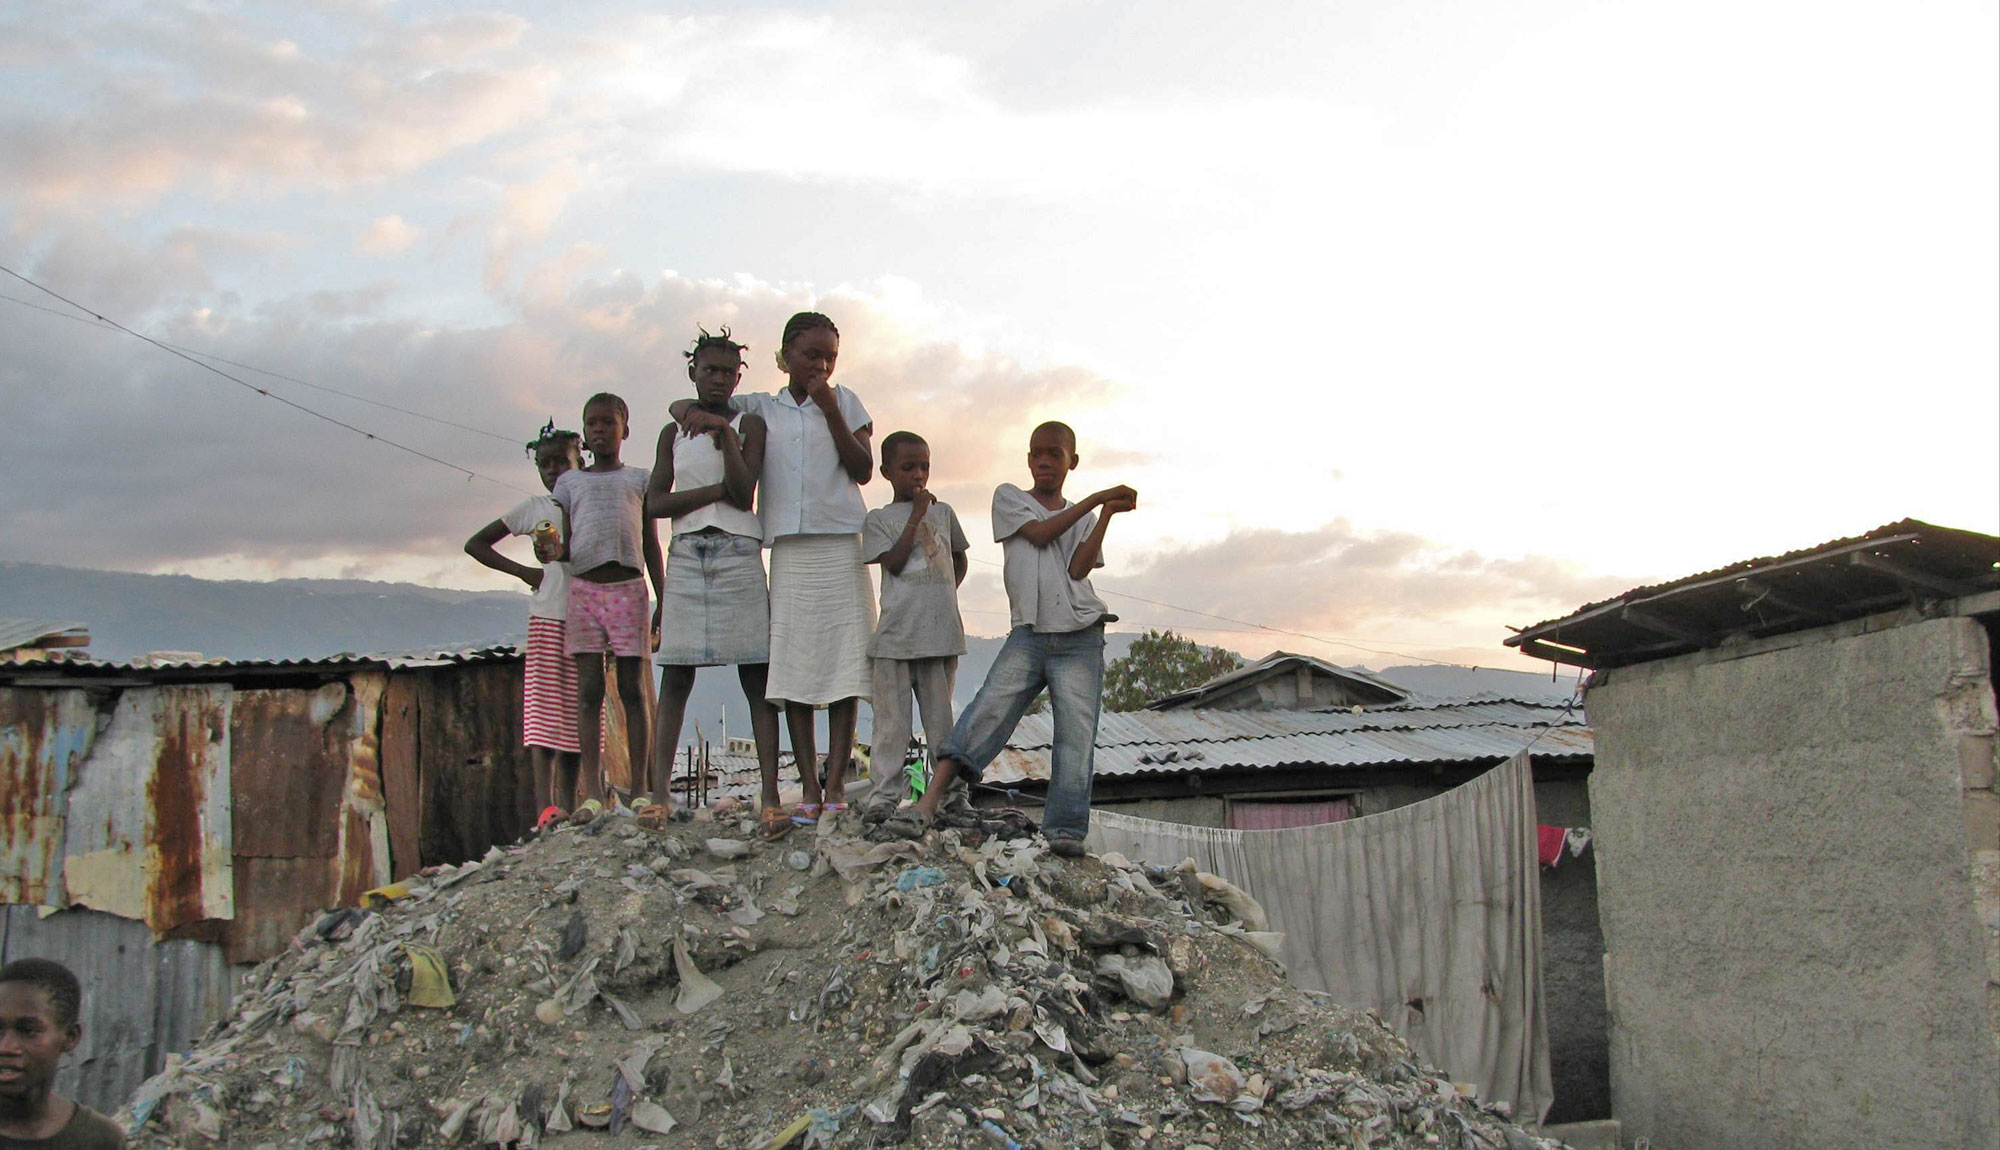 Children in Haiti on rubble